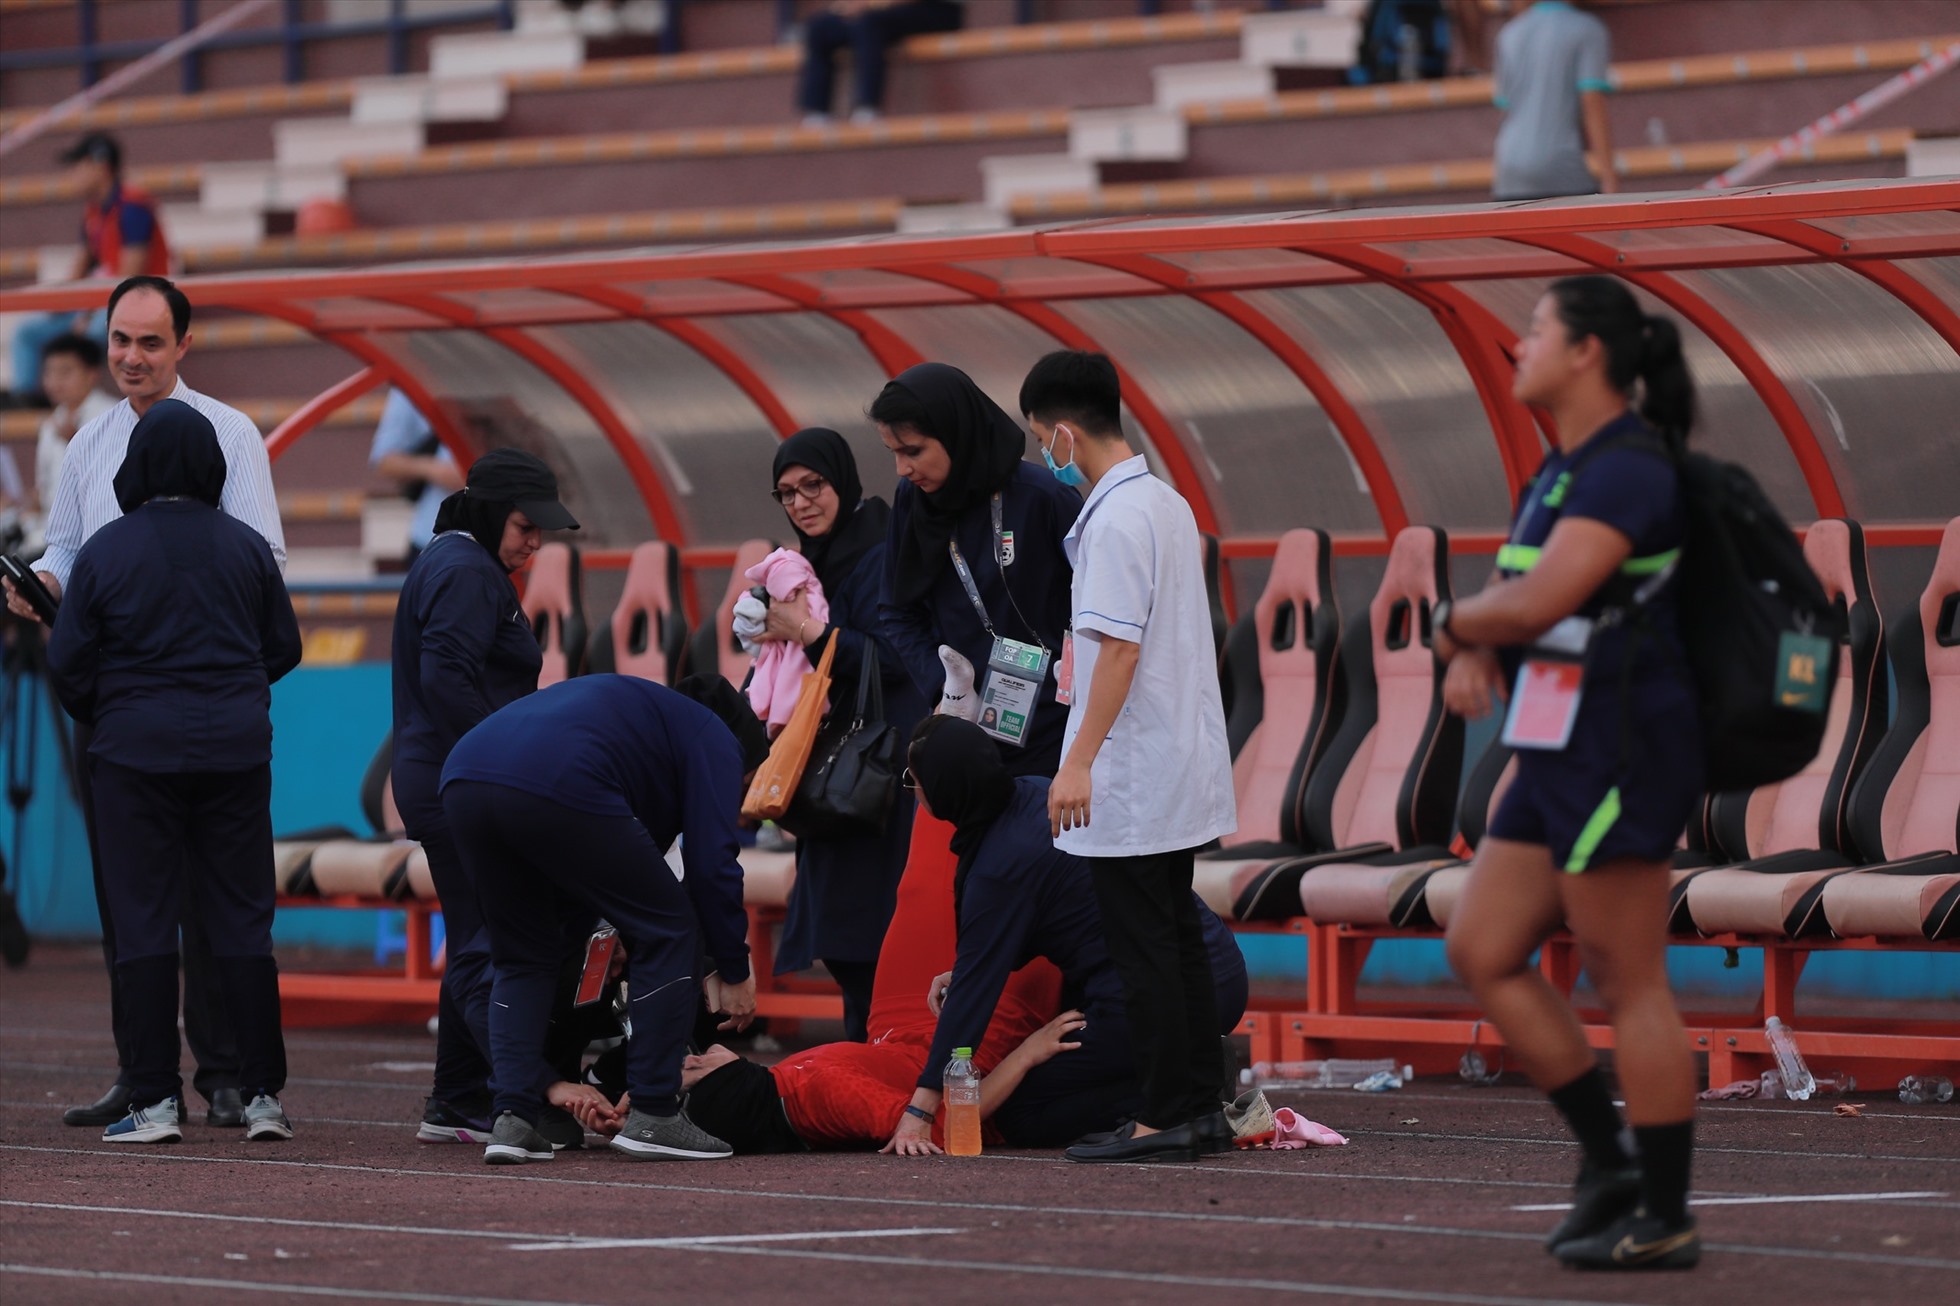 Tuy nhiên, sau trận đấu, một cầu thủ bên phía Iran đã bị ngất xỉu. Cầu thủ này ngay lập tức phải thở oxy và đã được đưa đi ngay tới bệnh viện.